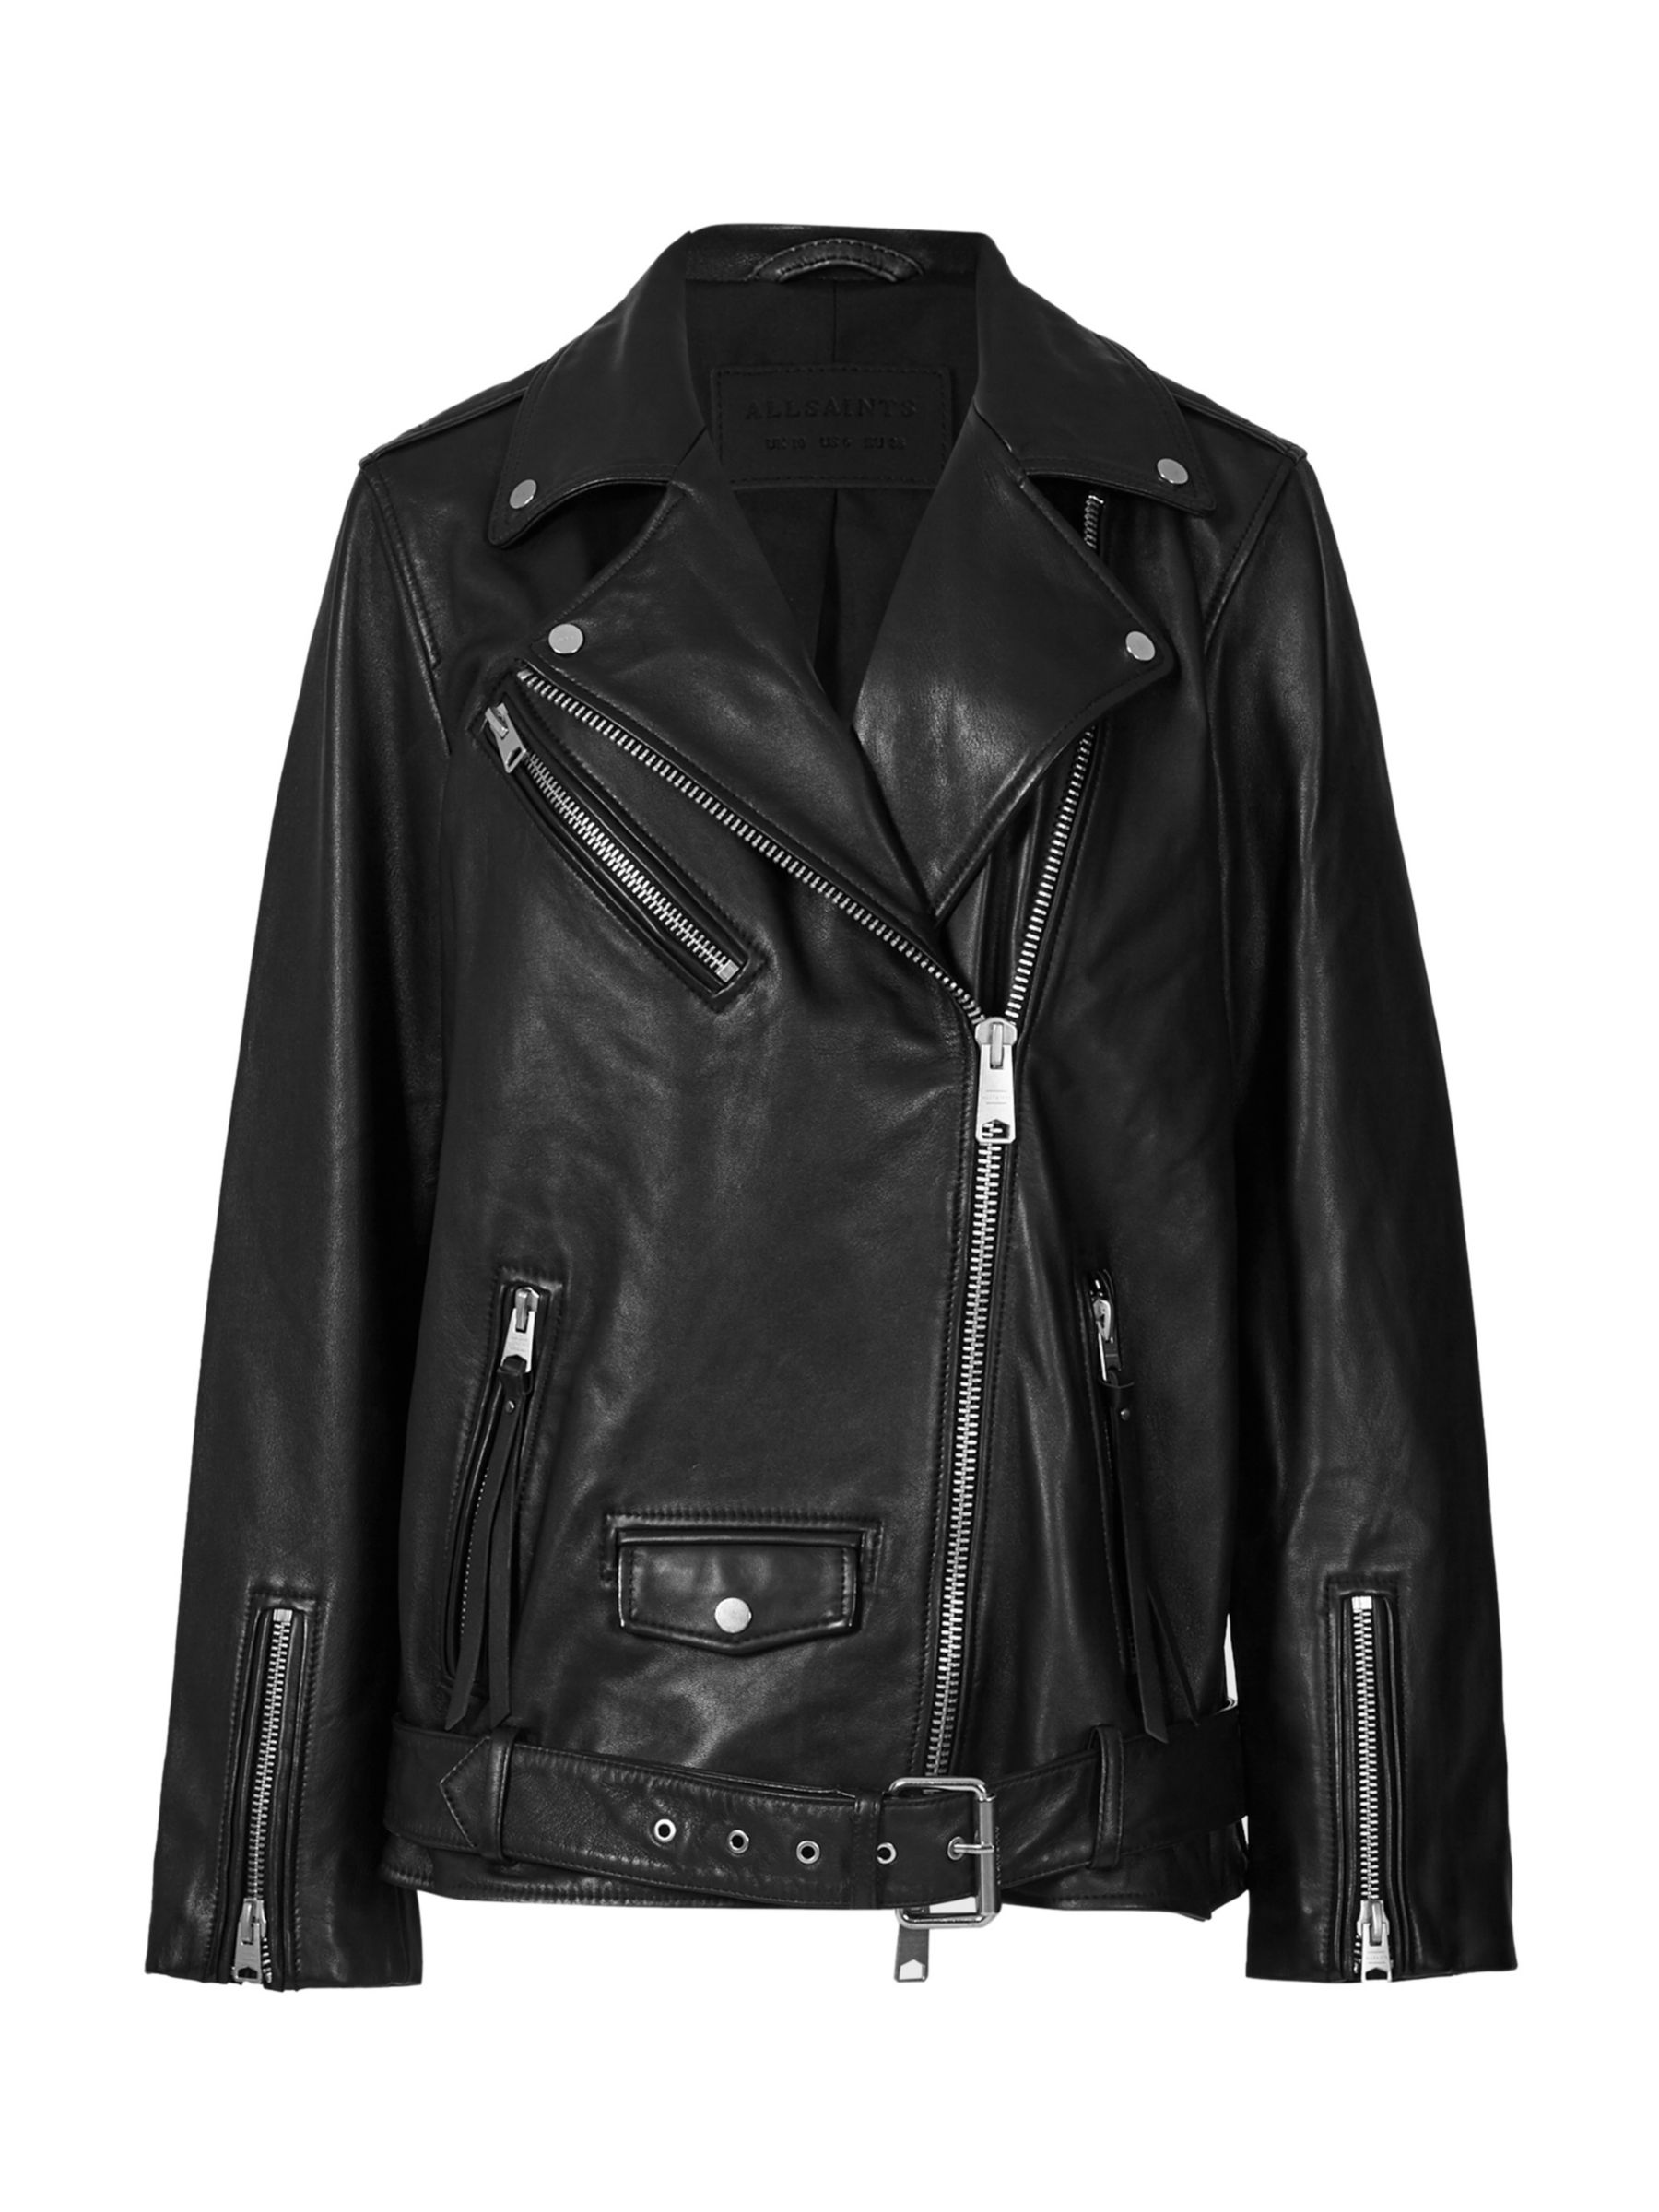 AllSaints Billie Leather Biker Jacket, Black/Black Studs at John Lewis ...